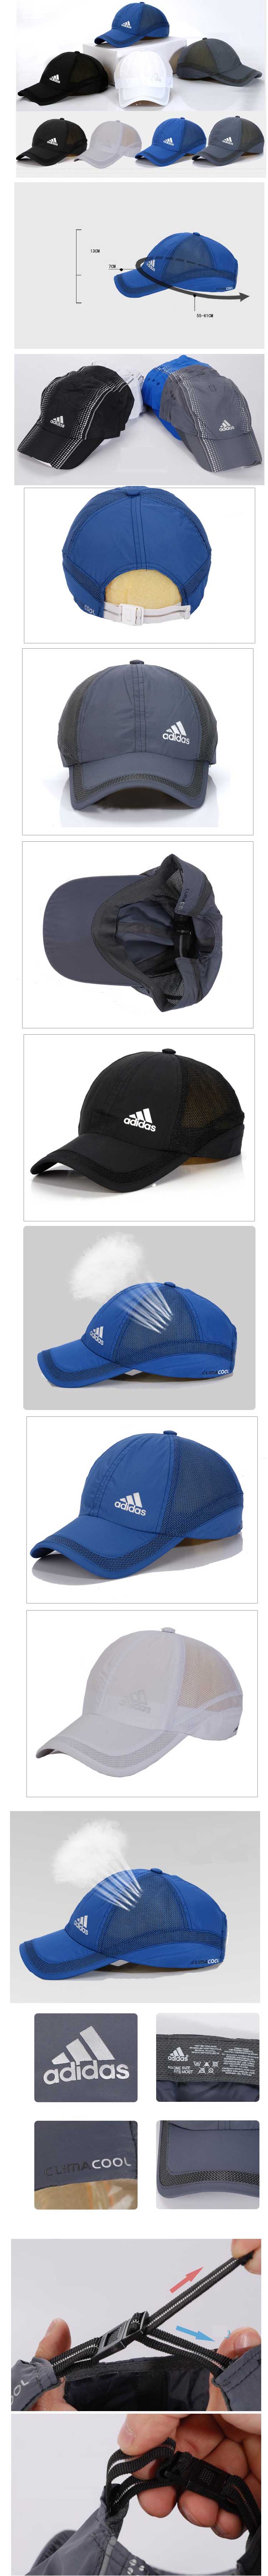 jual topi pria merk adidas clima , temukan koleksi topi pria terlengkap dari brand ternama hanya di sini